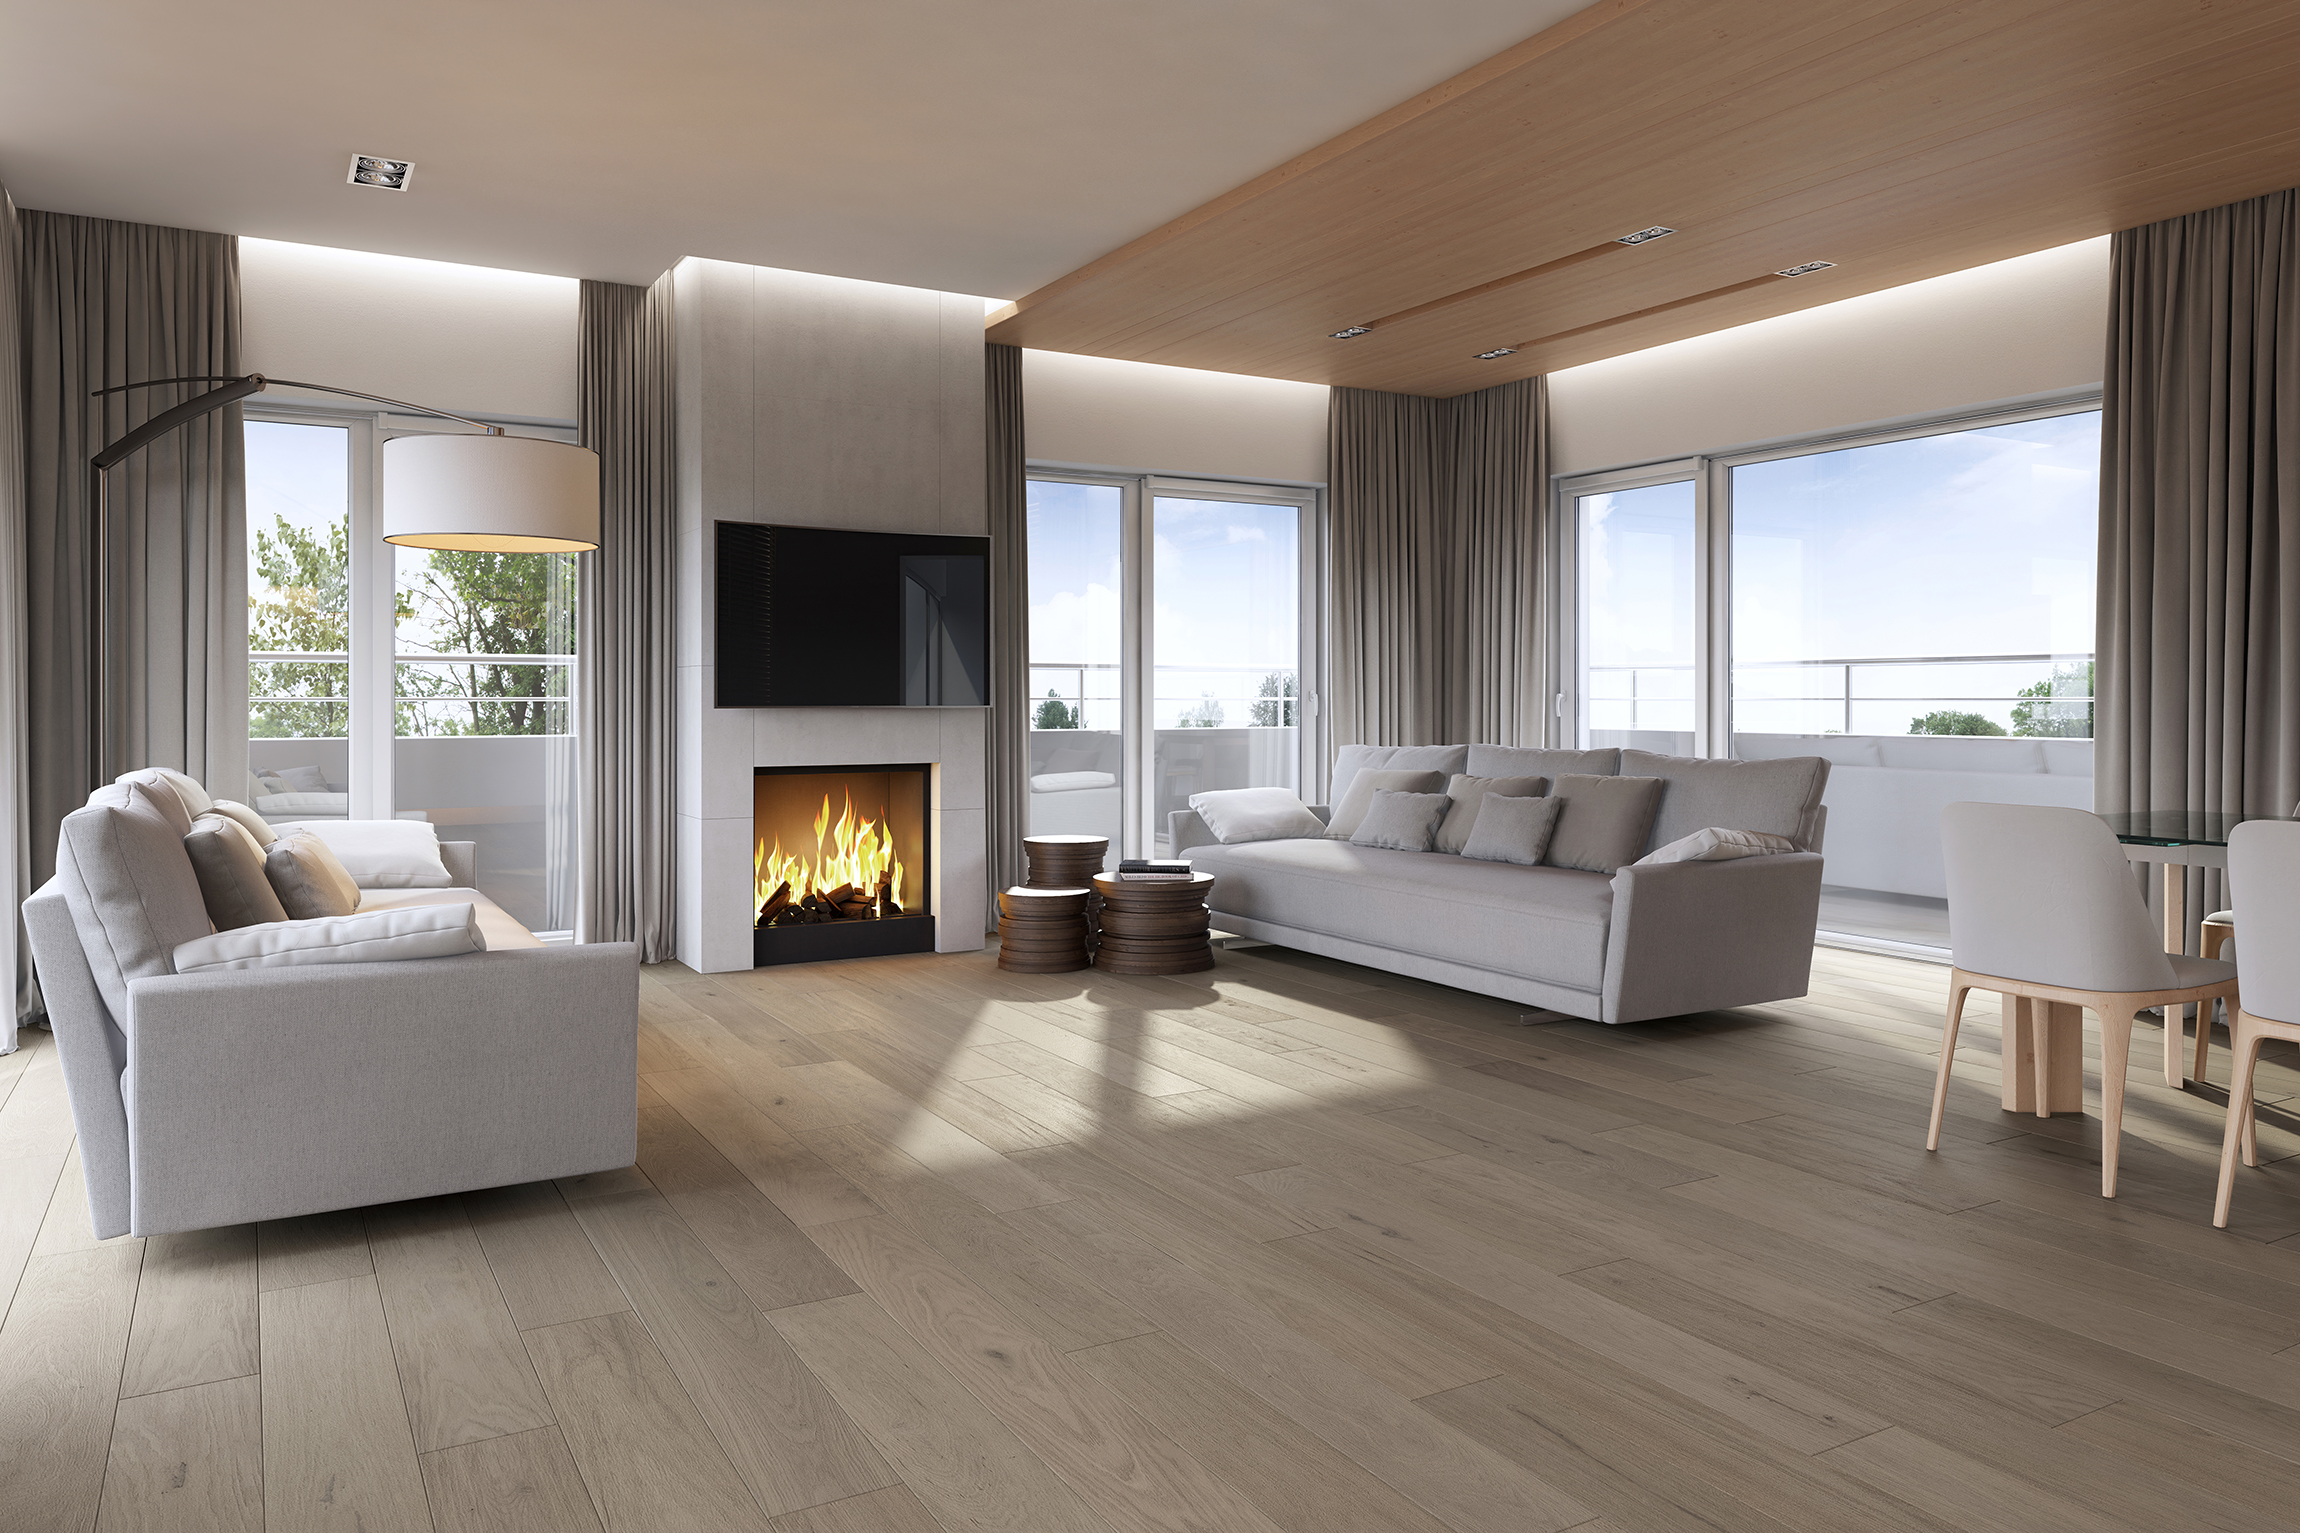 Living Room Design 3D Rendering for Wood Floors